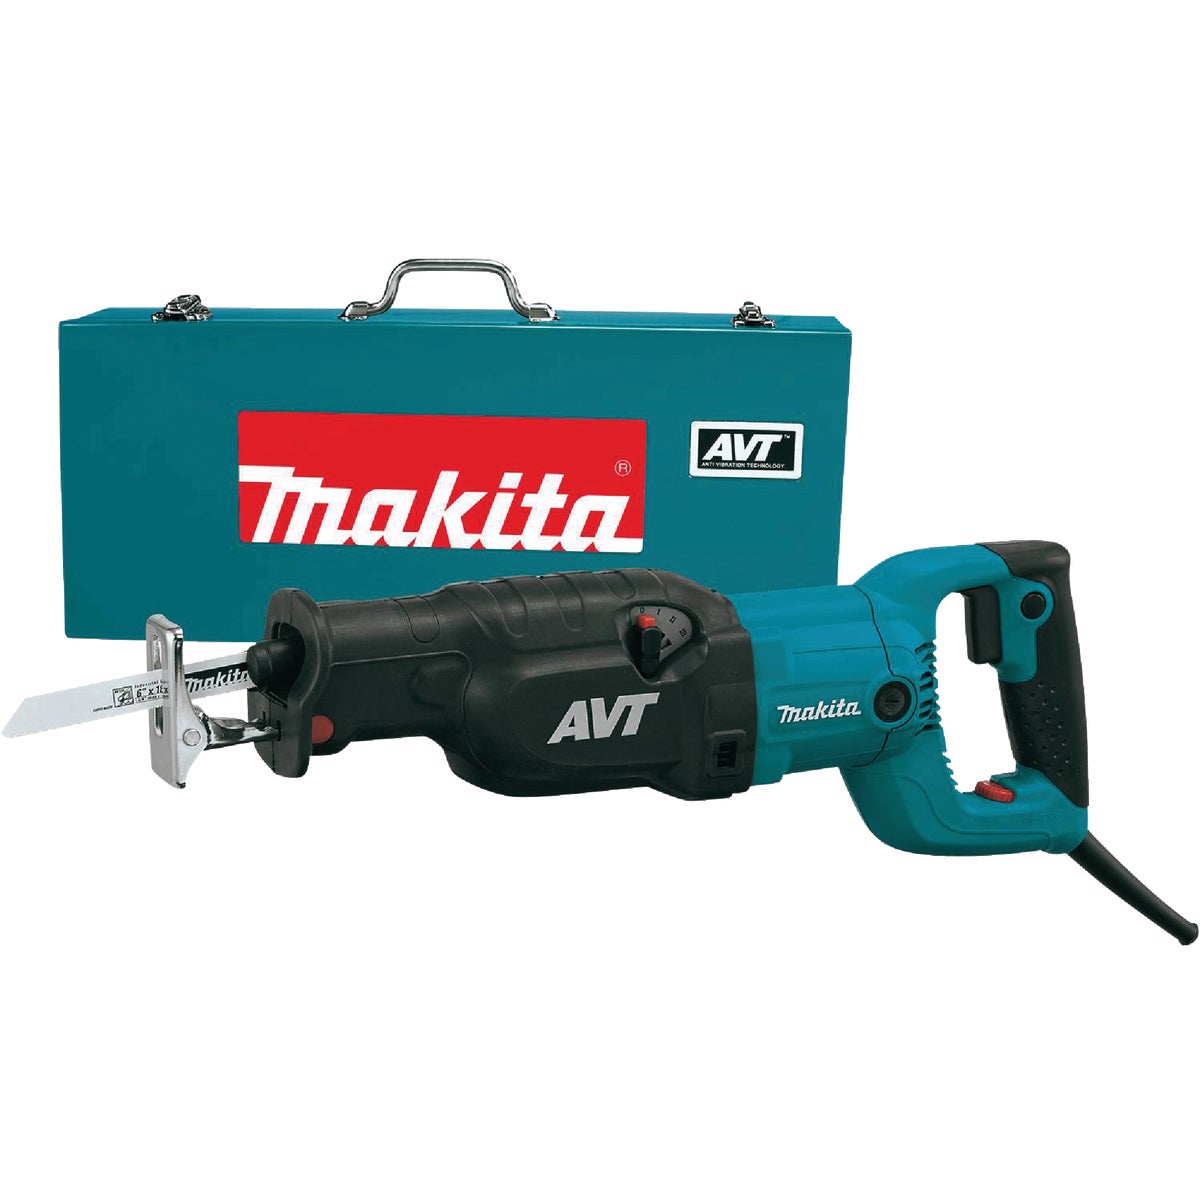 Makita 15-Amp Reciprocating Saw Kit